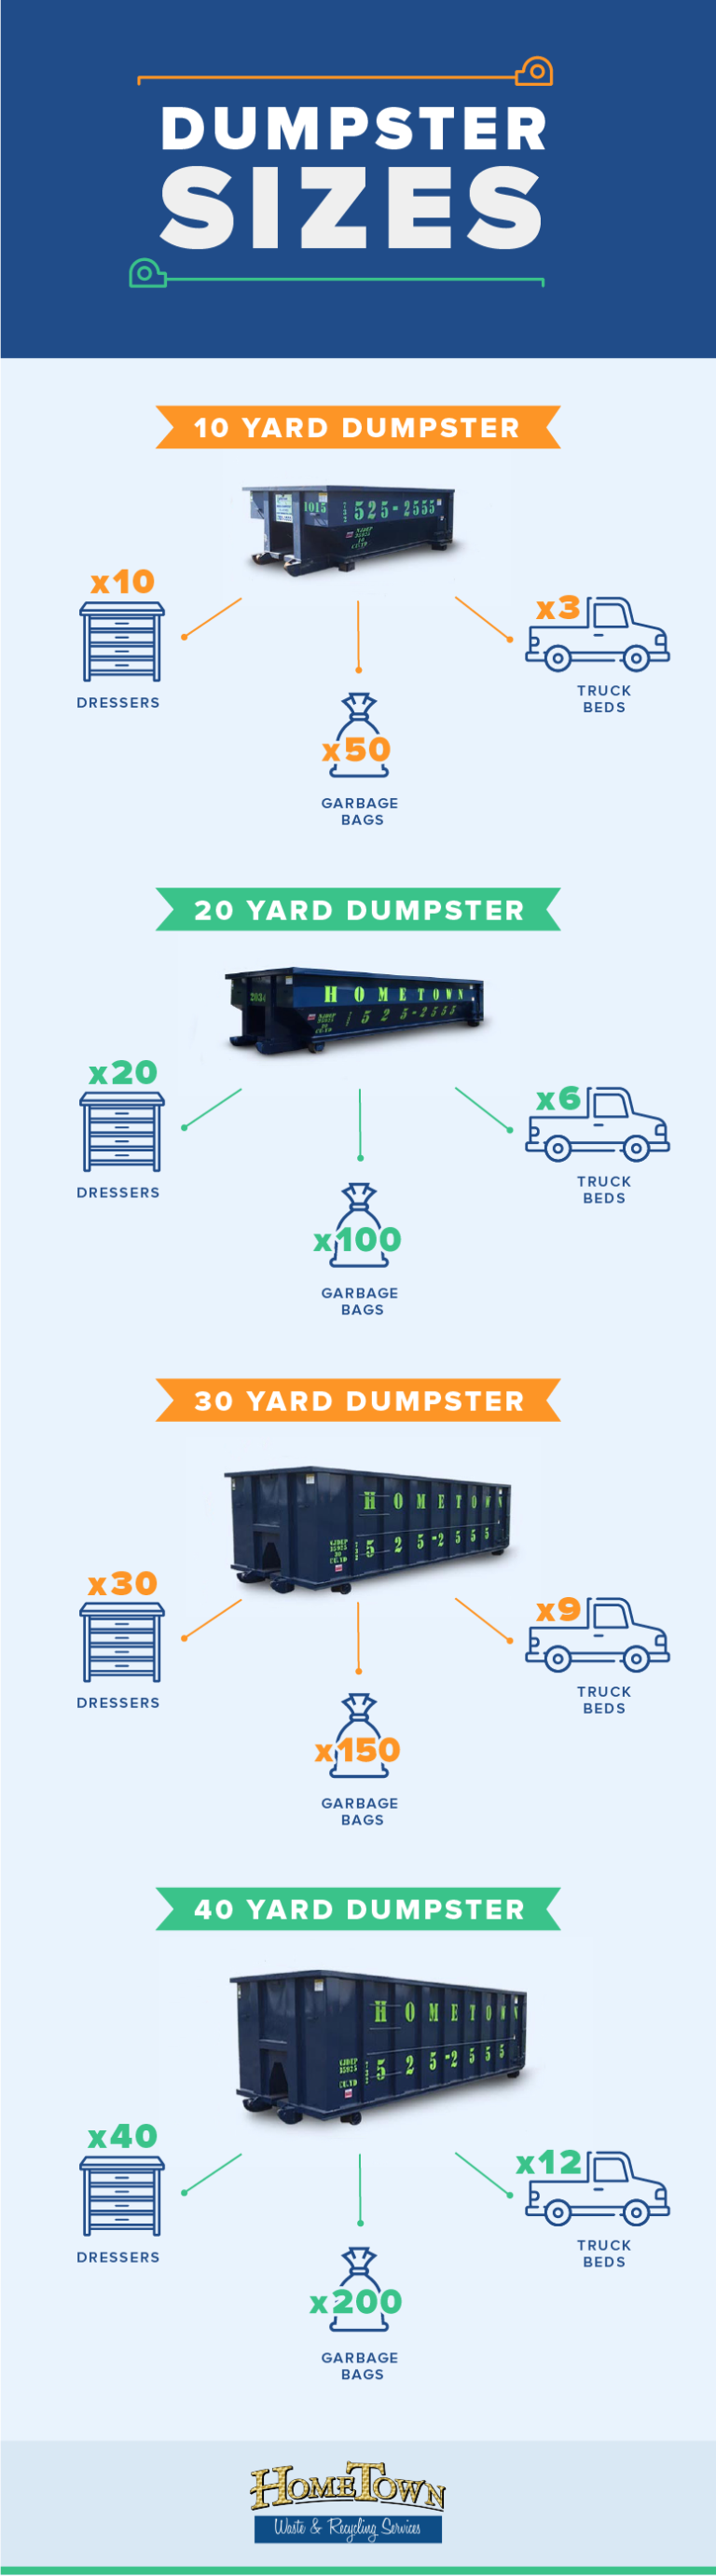 Dumpster Sizes V2 01 768x2763 